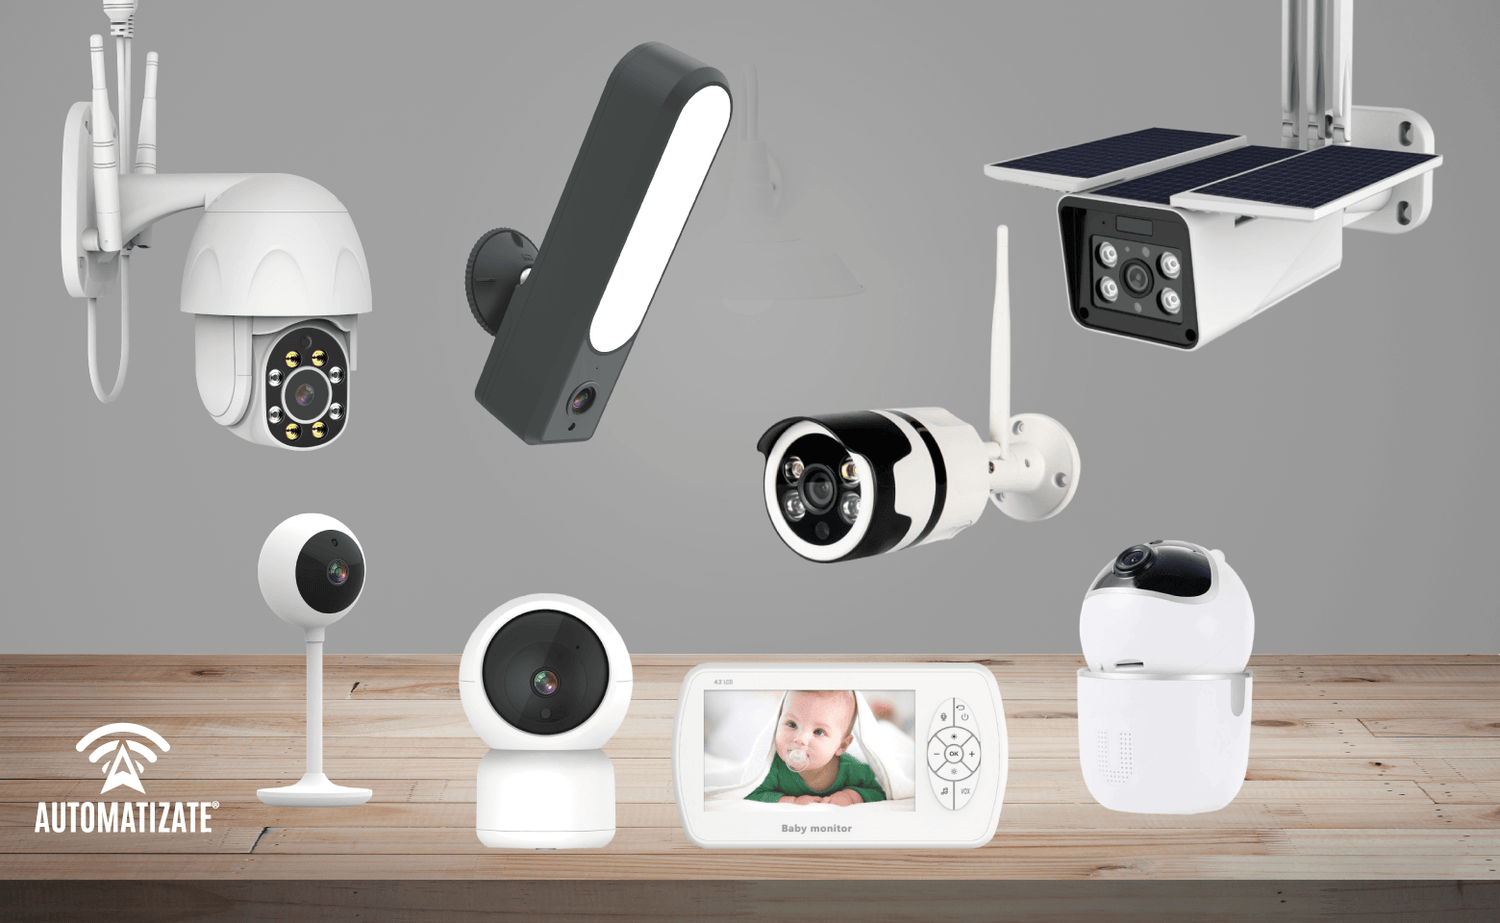 Cómo elegir cámaras de vigilancia para exterior?